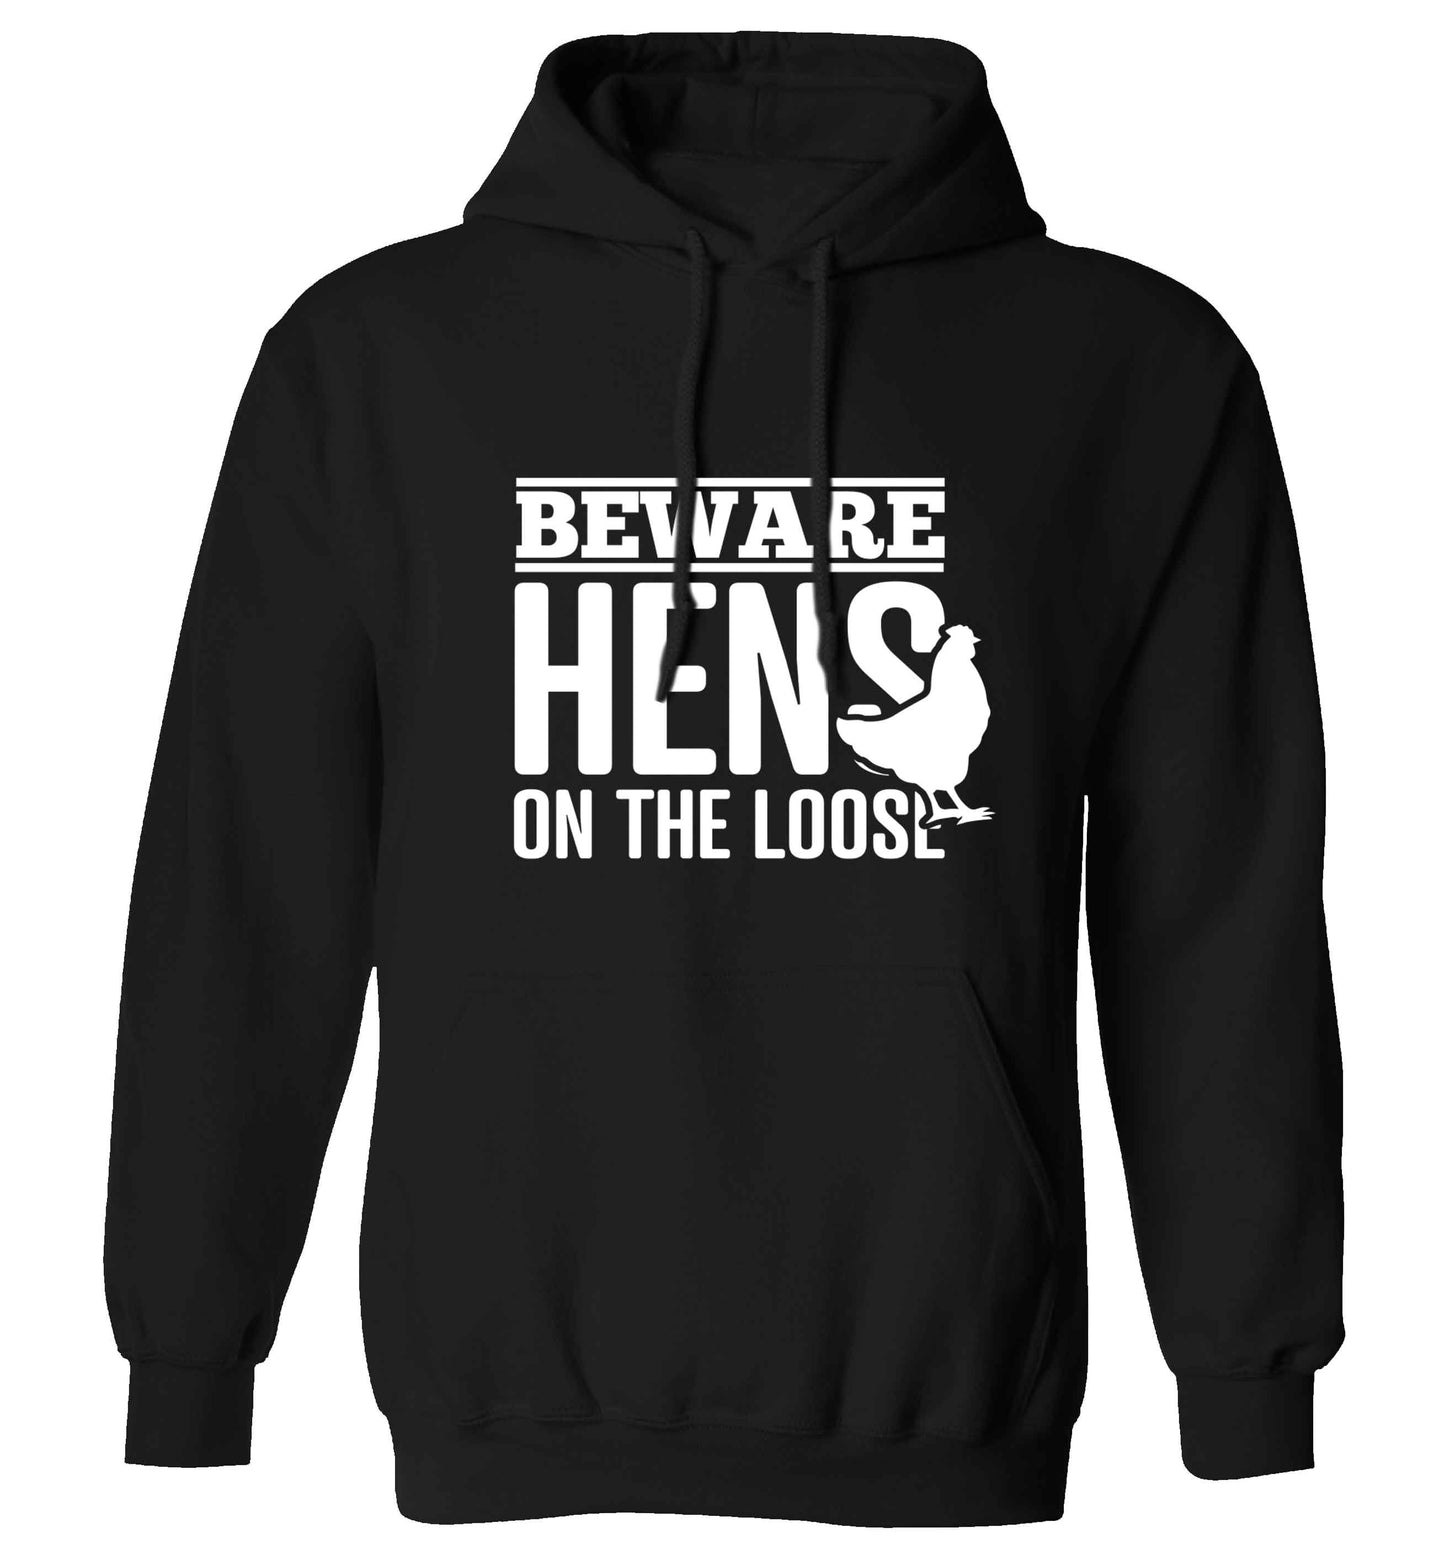 Beware hens on the loose adults unisex black hoodie 2XL